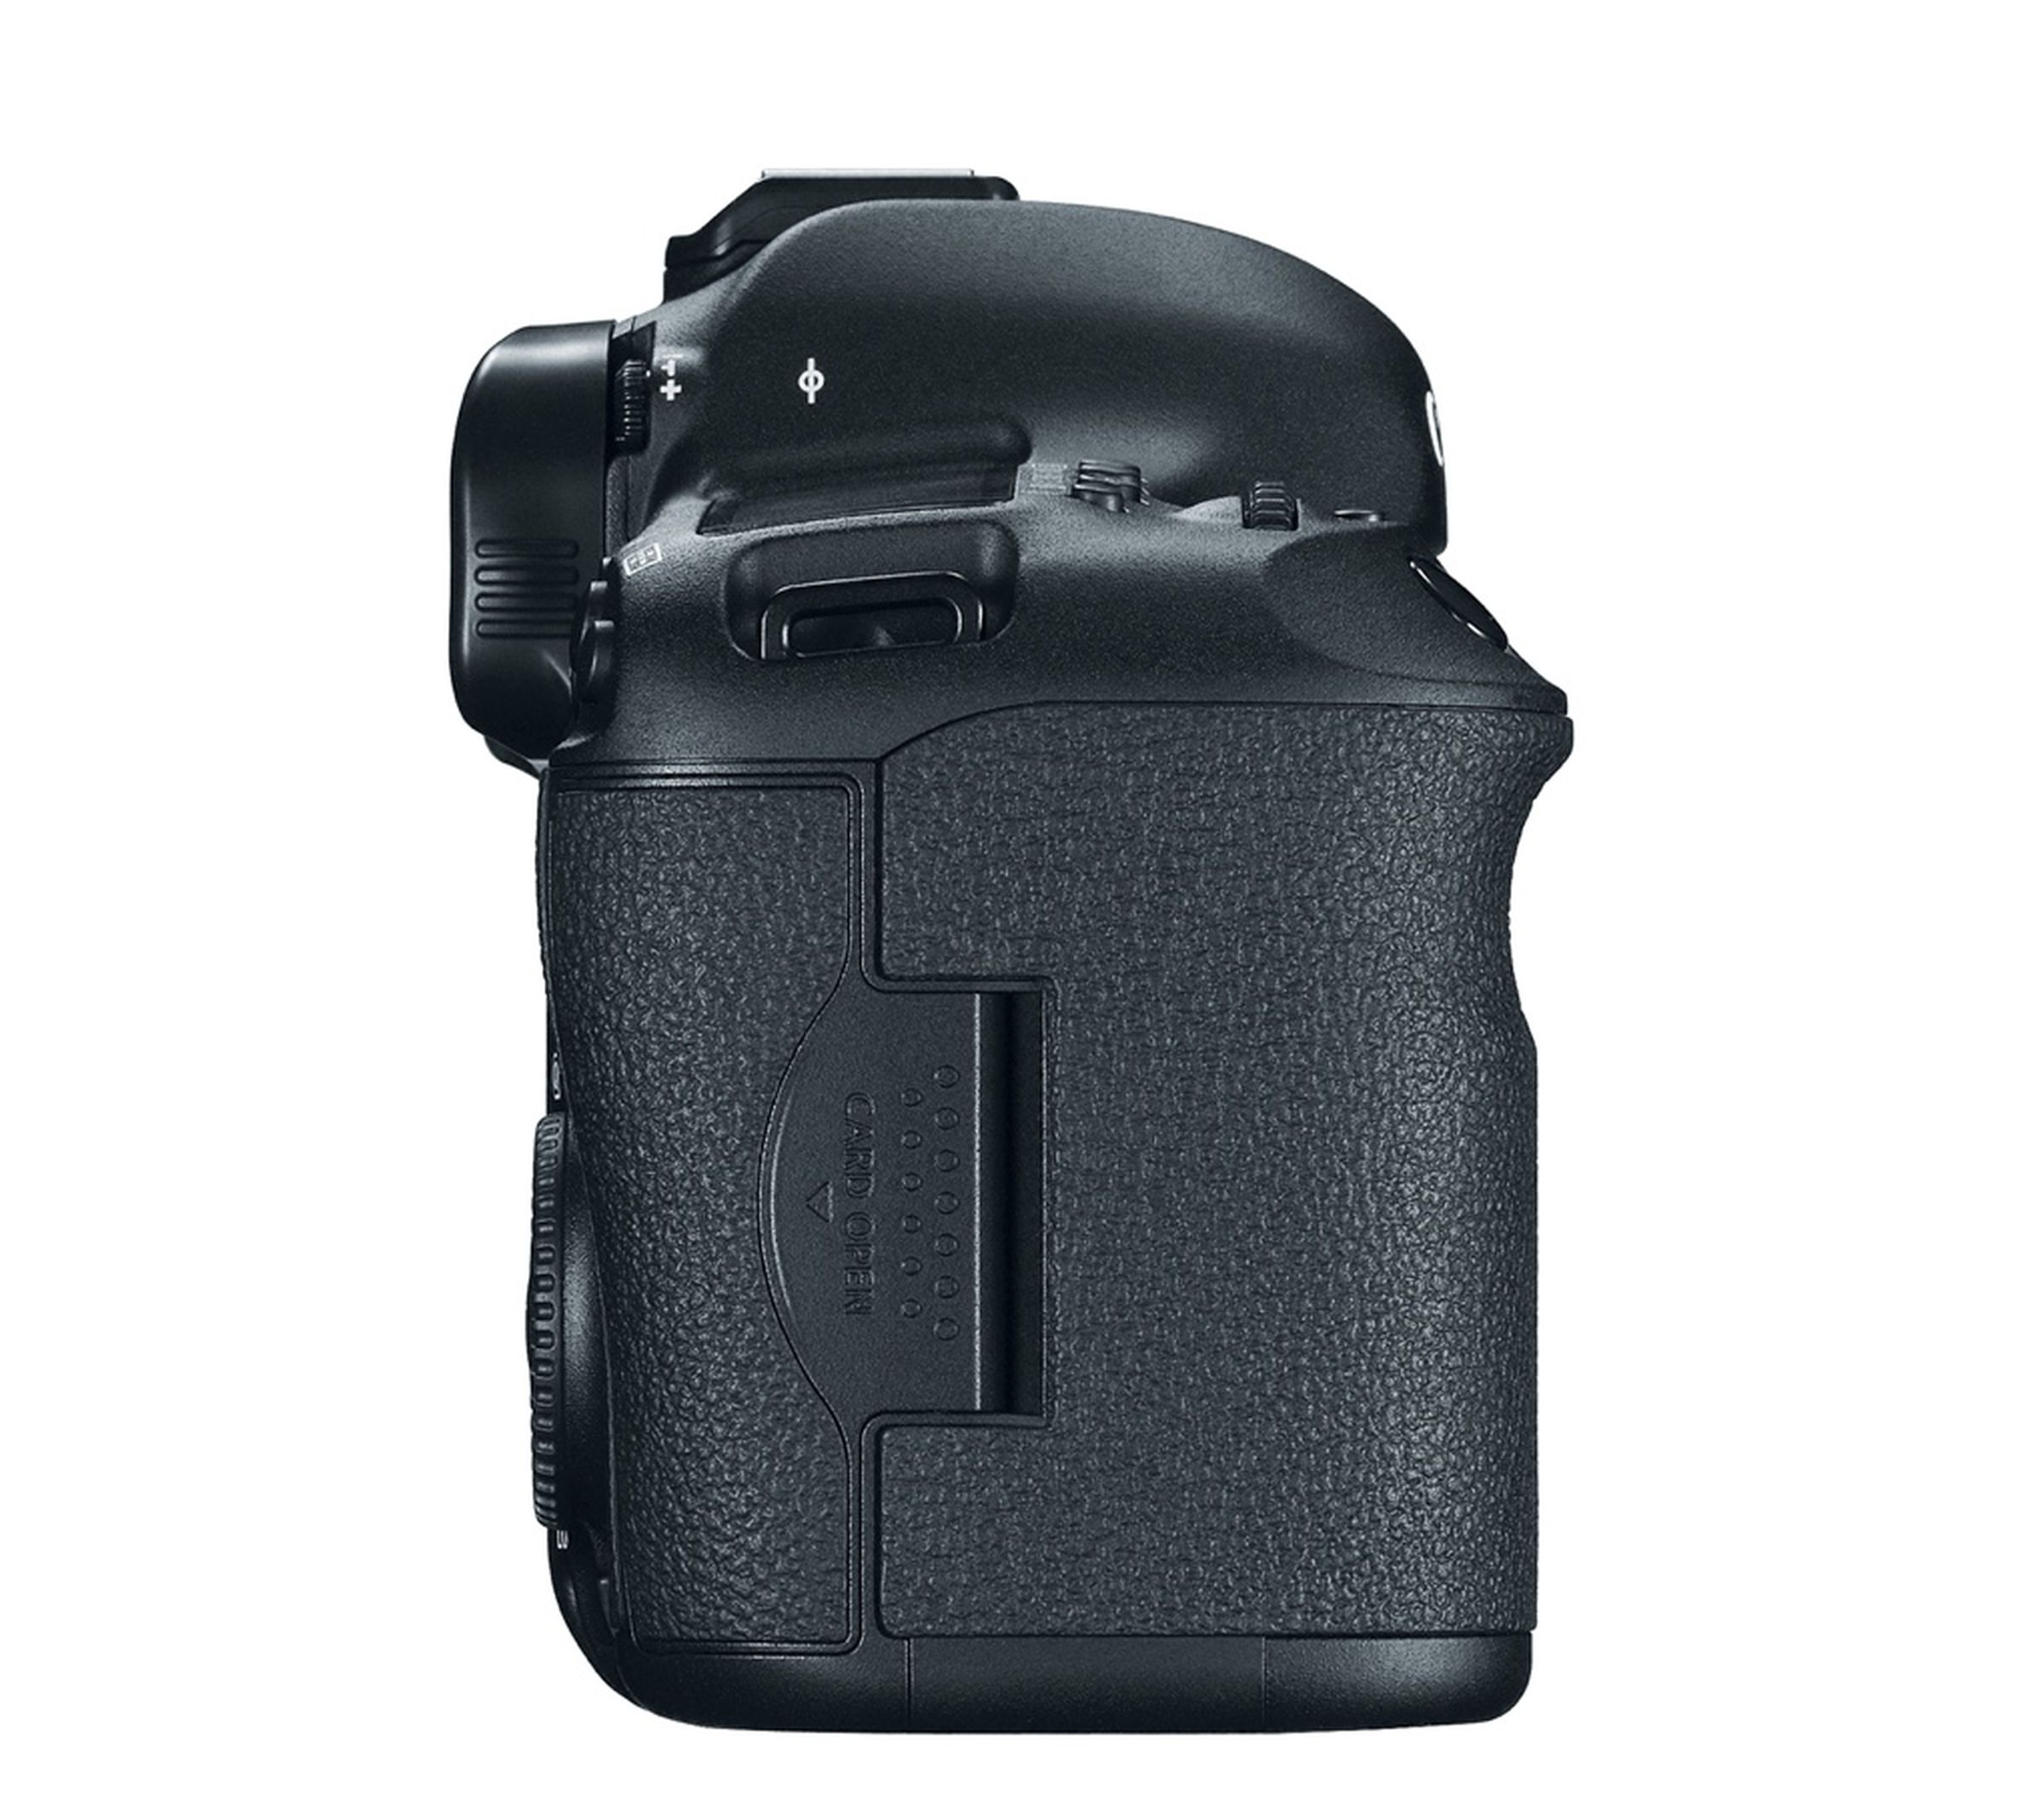 Canon EOS 5D Mark III press photos